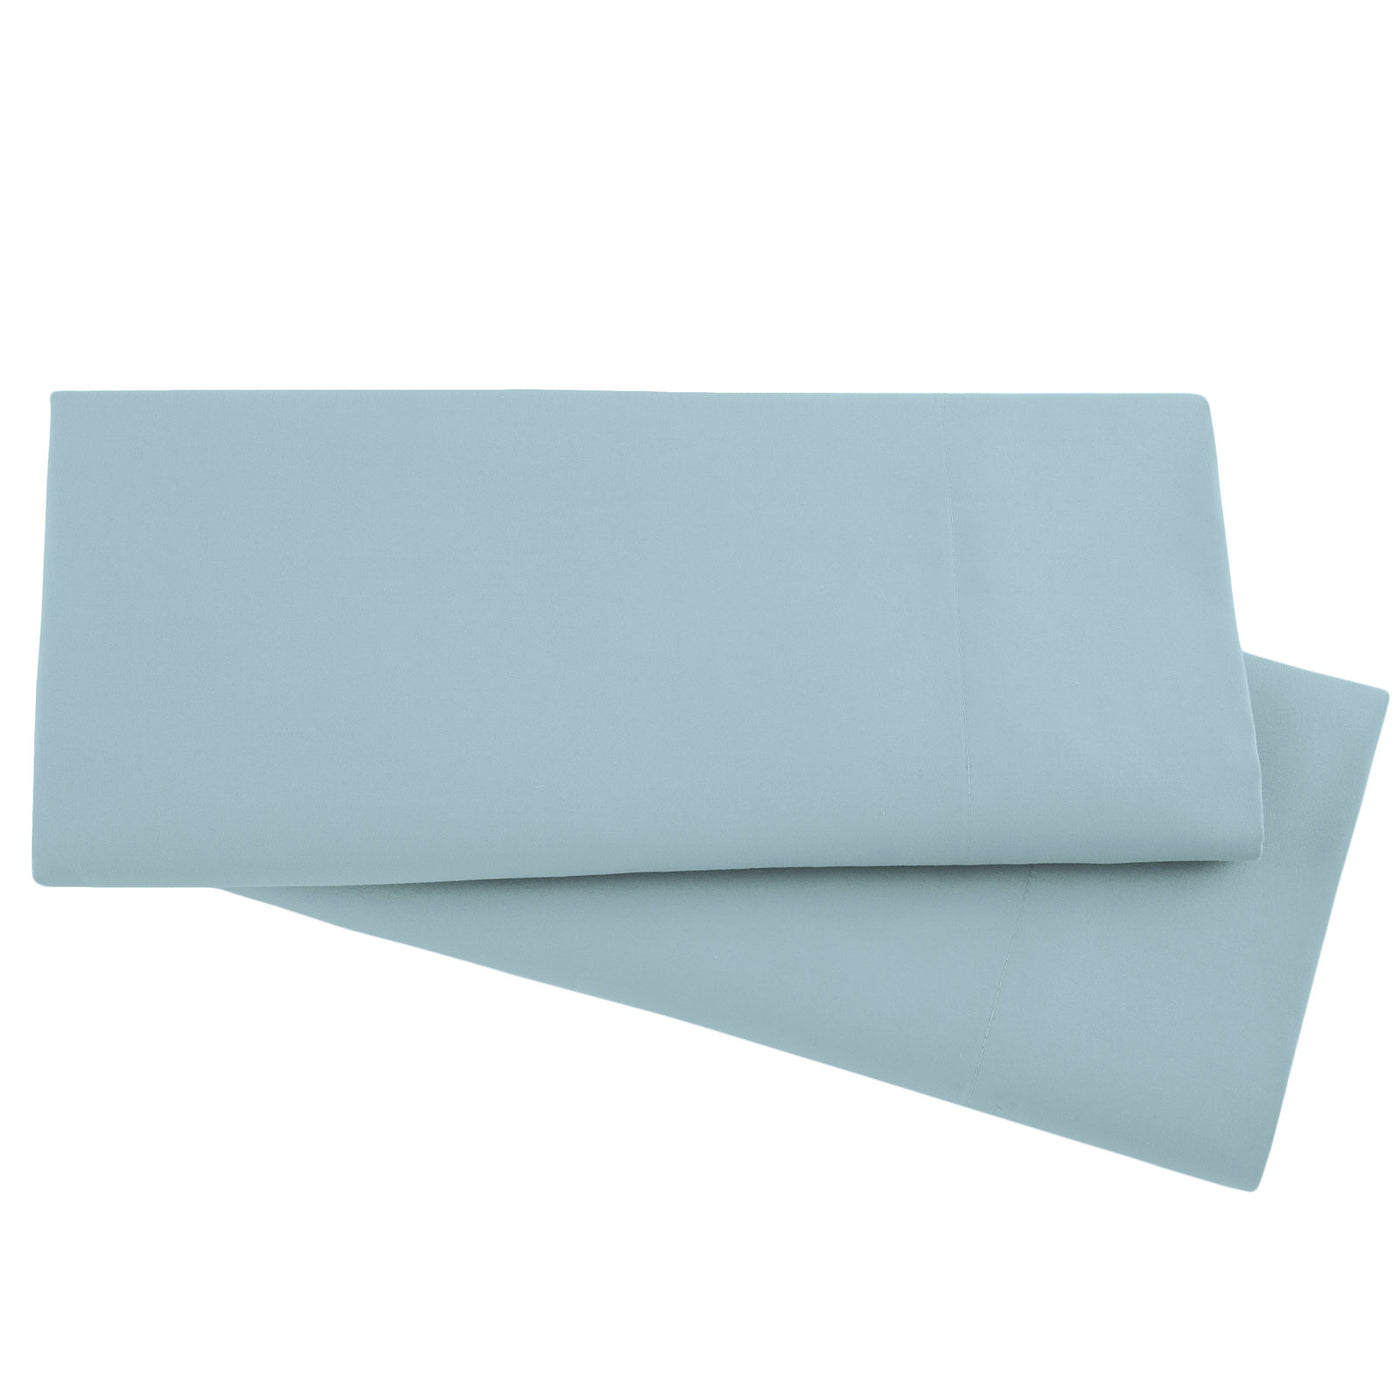 2-Piece Microfiber Pillowcase Set in Sky Blue